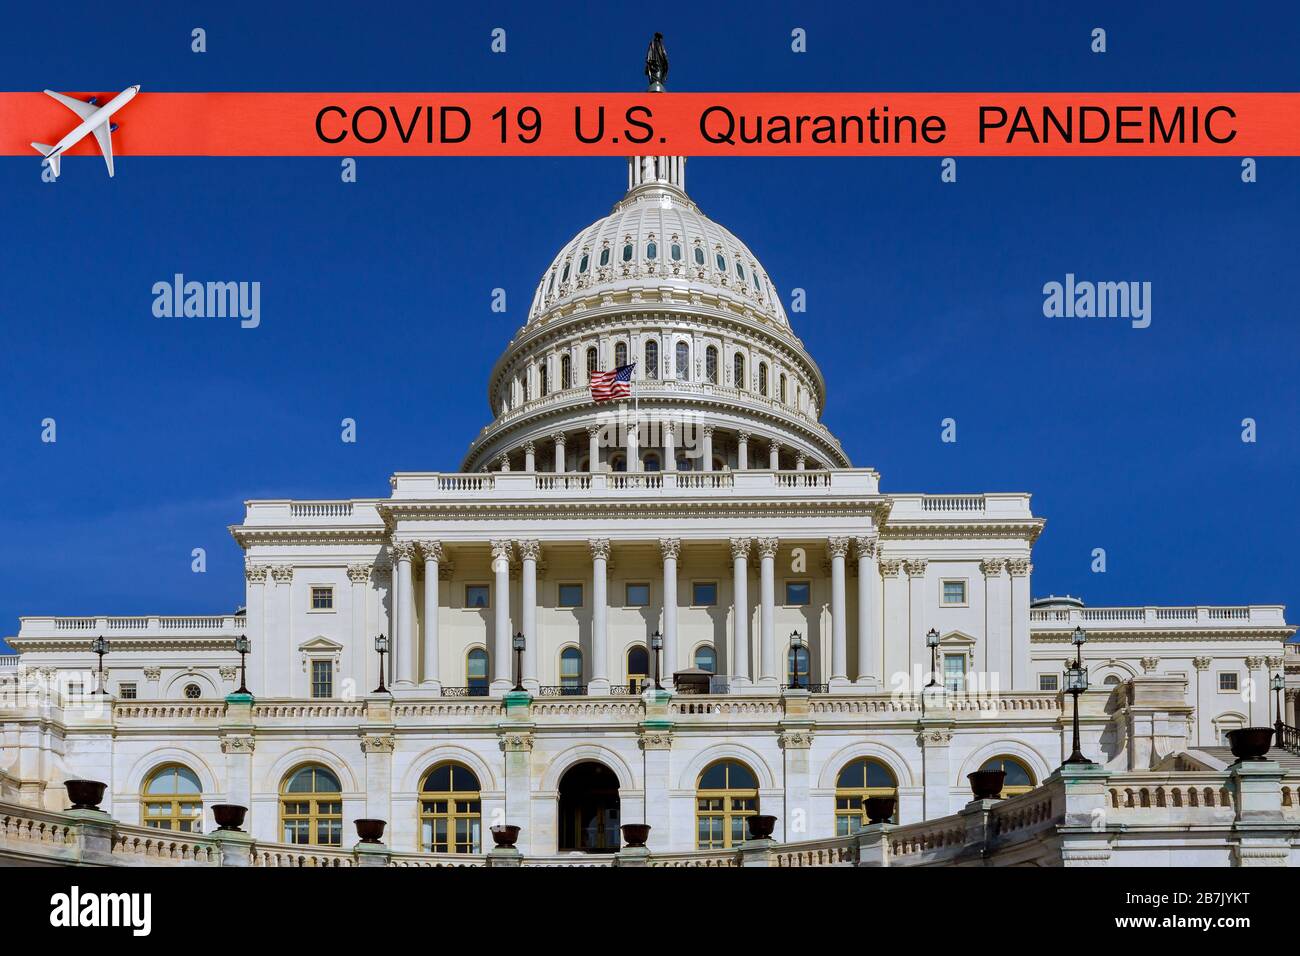 Pandemie hat den USA Quarantänekovid 19 das United States Capitol in Washington, D.C. an einem sonnigen Tag abgesagt. Stockfoto